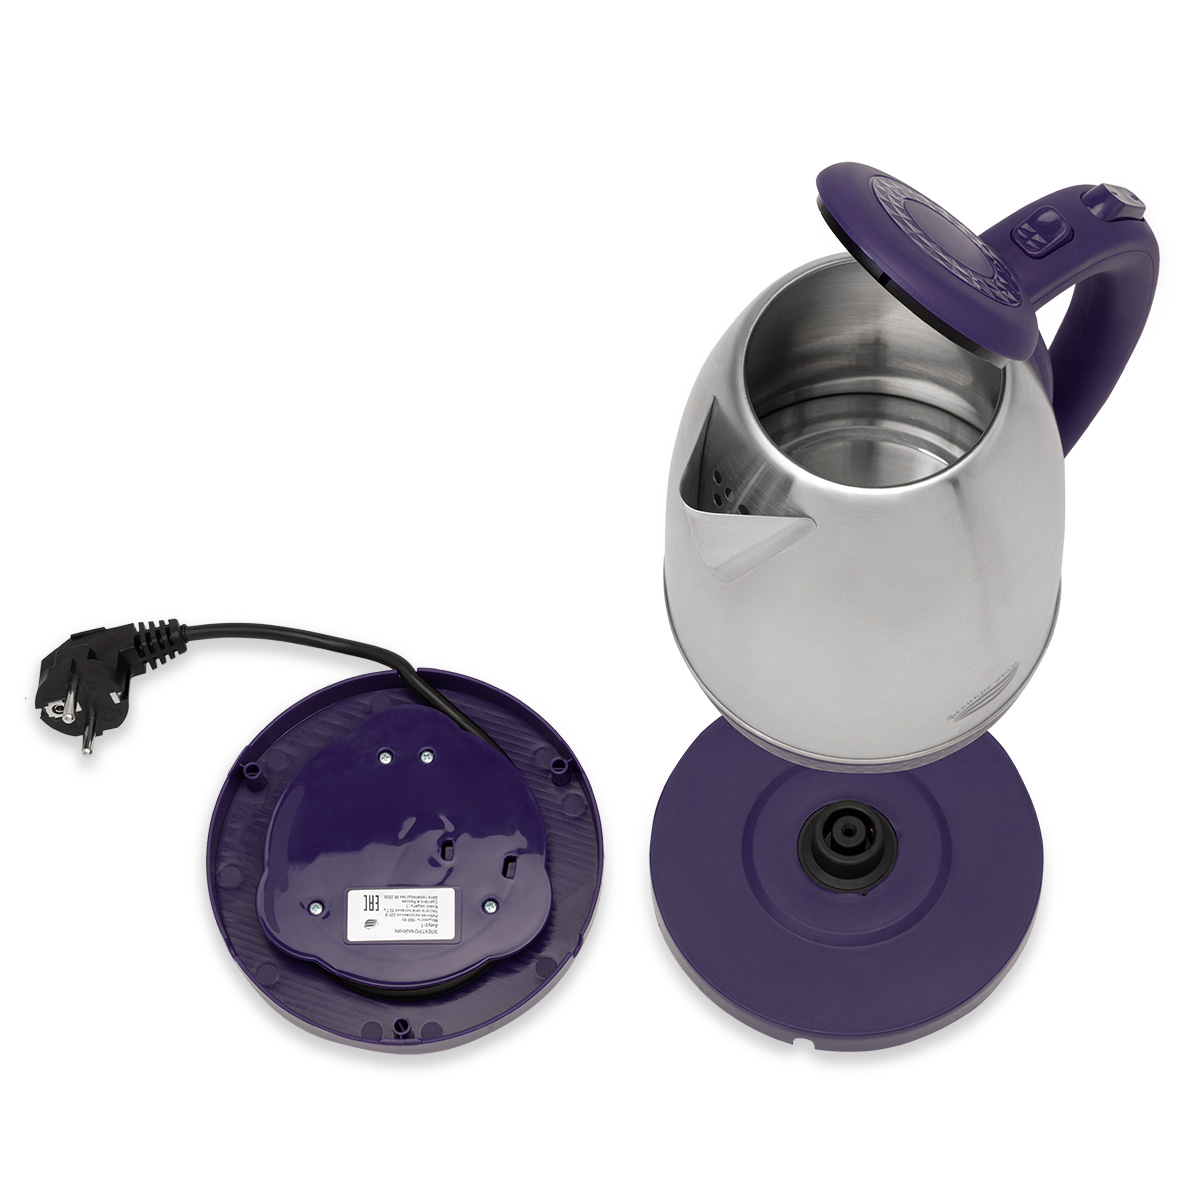 Чайник электрический Великие реки Амур-1 фиолетовый, 1,8л, нержавейка